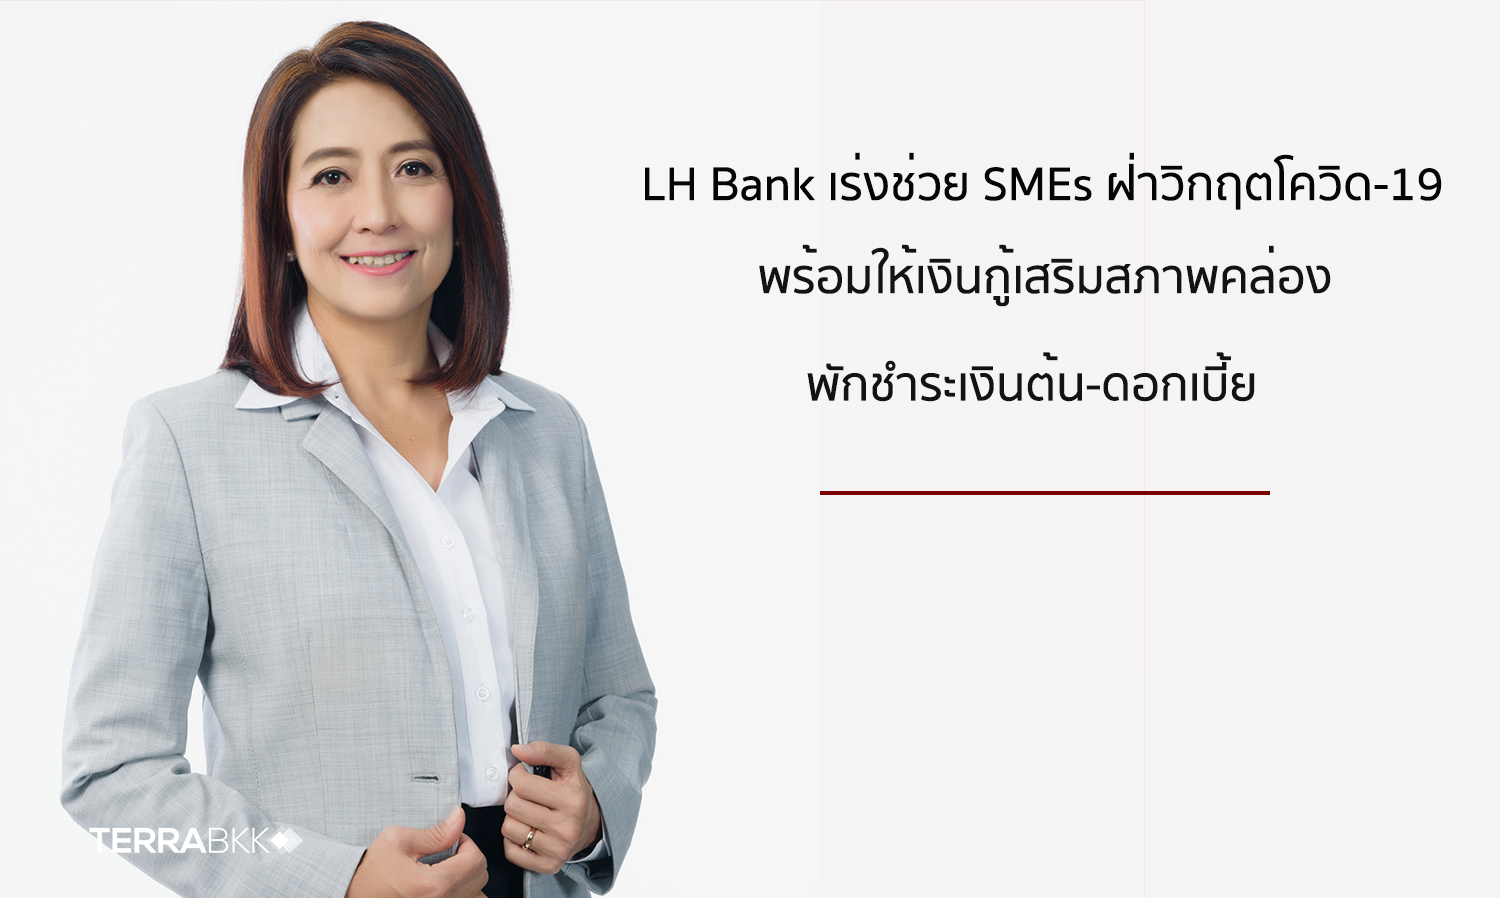 LH Bank เร่งช่วย SMEs ฝ่าวิกฤตโควิด-19  พร้อมให้เงินกู้เสริมสภาพคล่อง พักชำระเงินต้น-ดอกเบี้ย